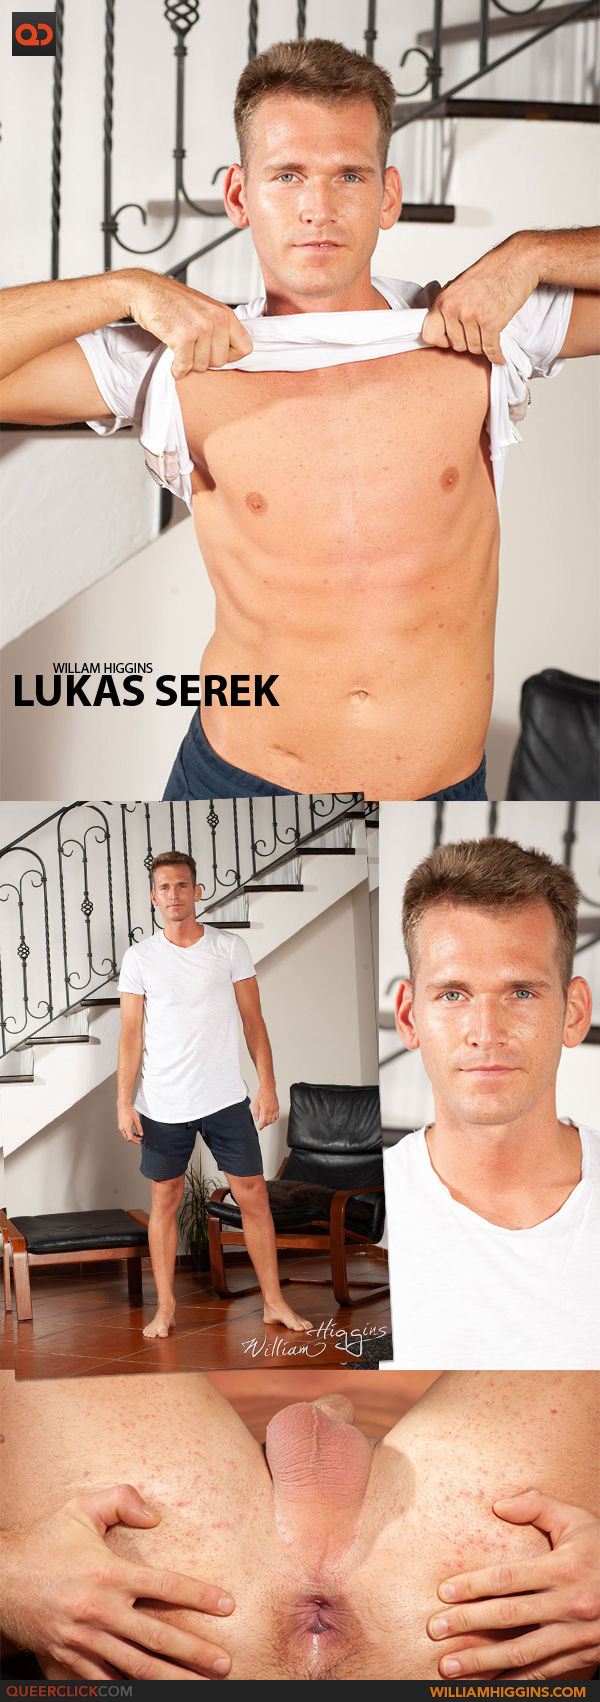 William Higgins: Lukas Serek